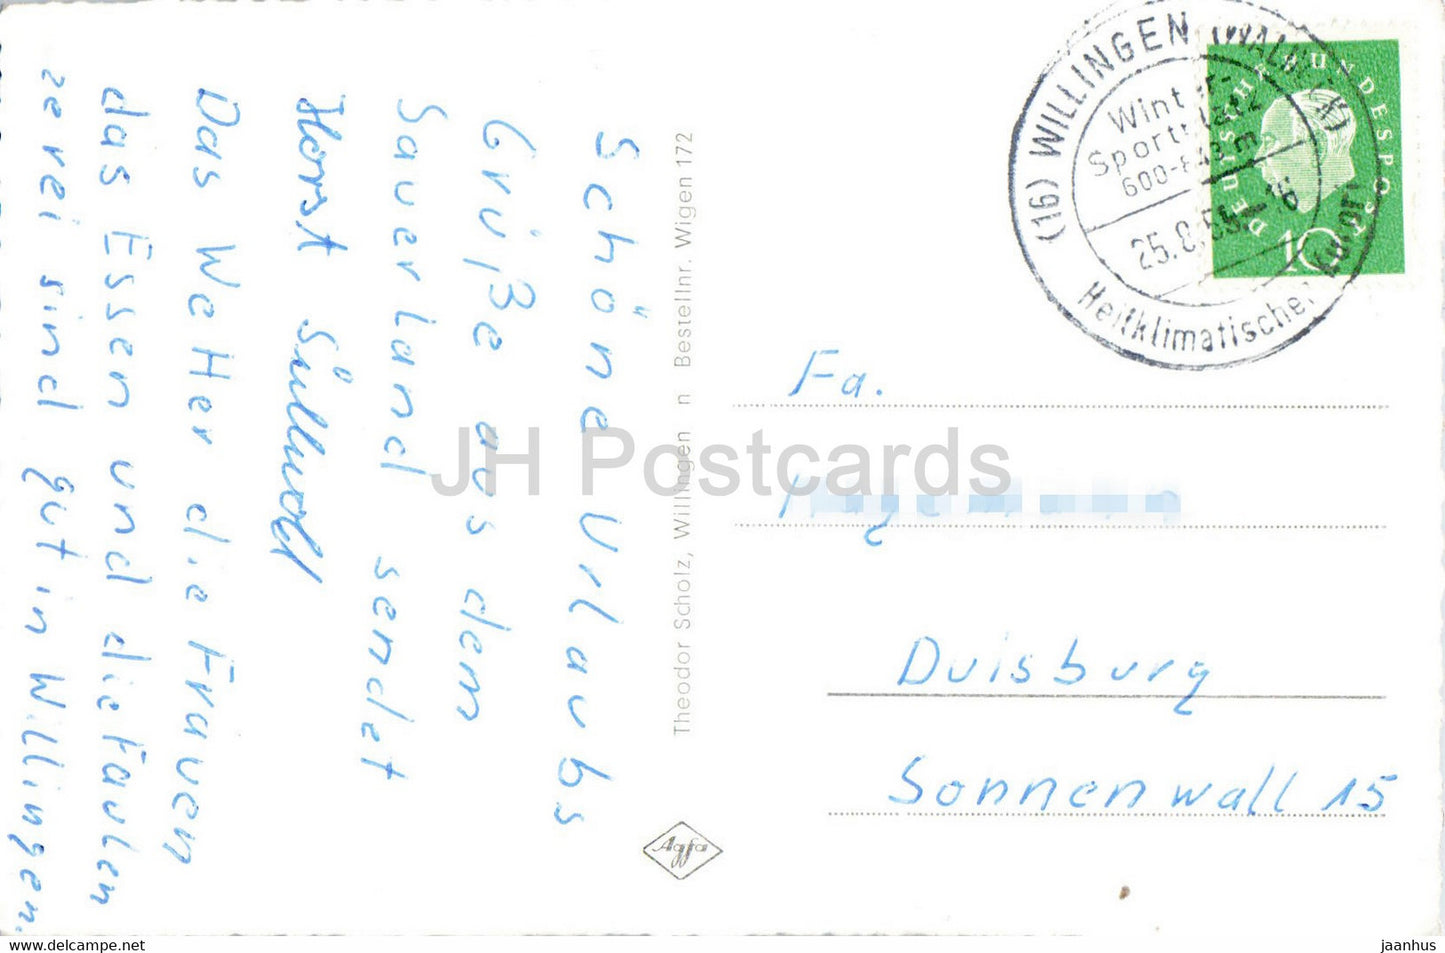 Willingen - Waldeck - Hermeketal - Hoppecketal - Tiere - Hirsche - alte Postkarte - 1959 - Deutschland - gebraucht